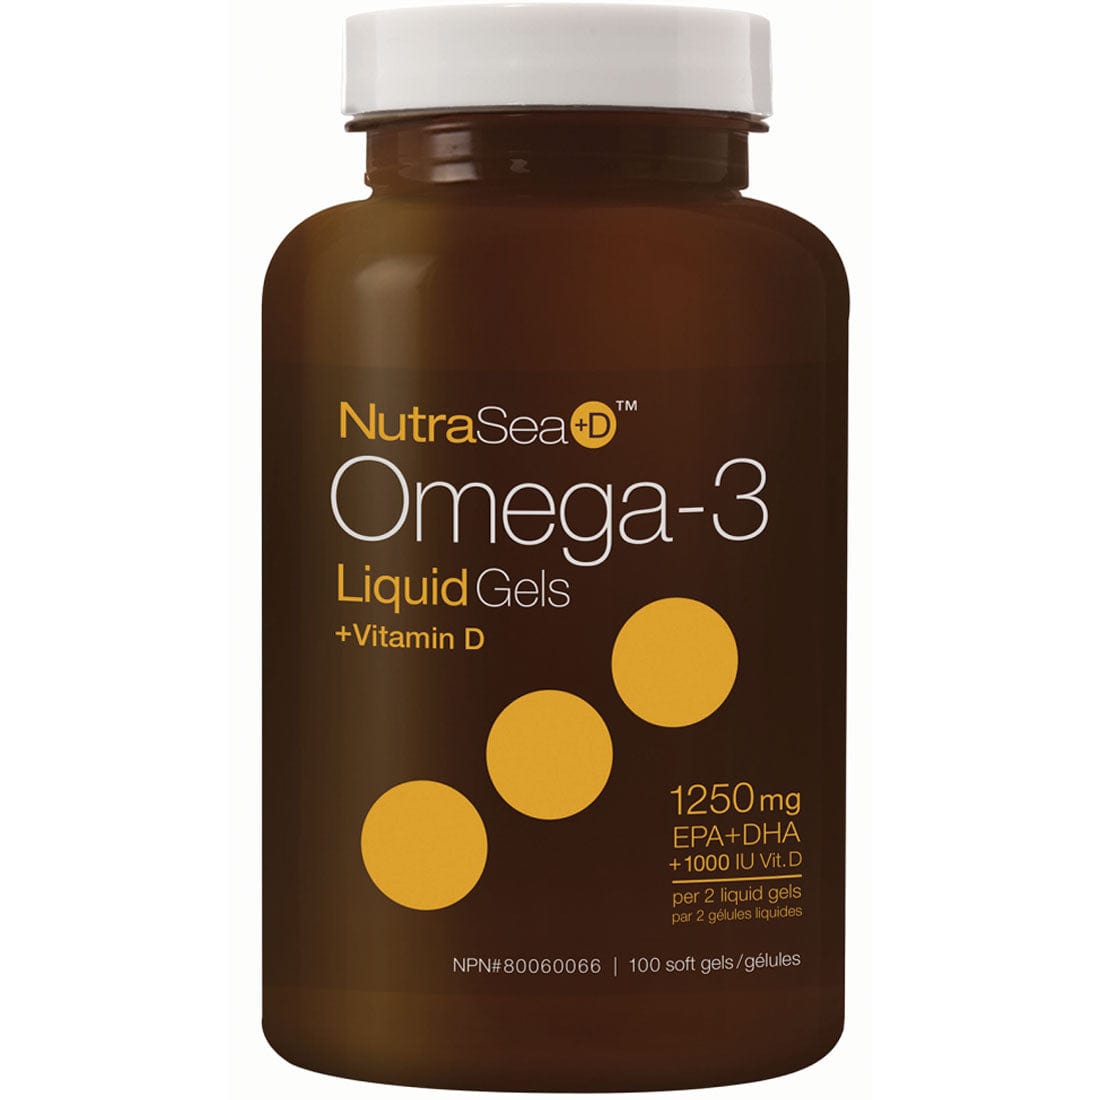 NutraSea+D Omega-3 Liquid Gels